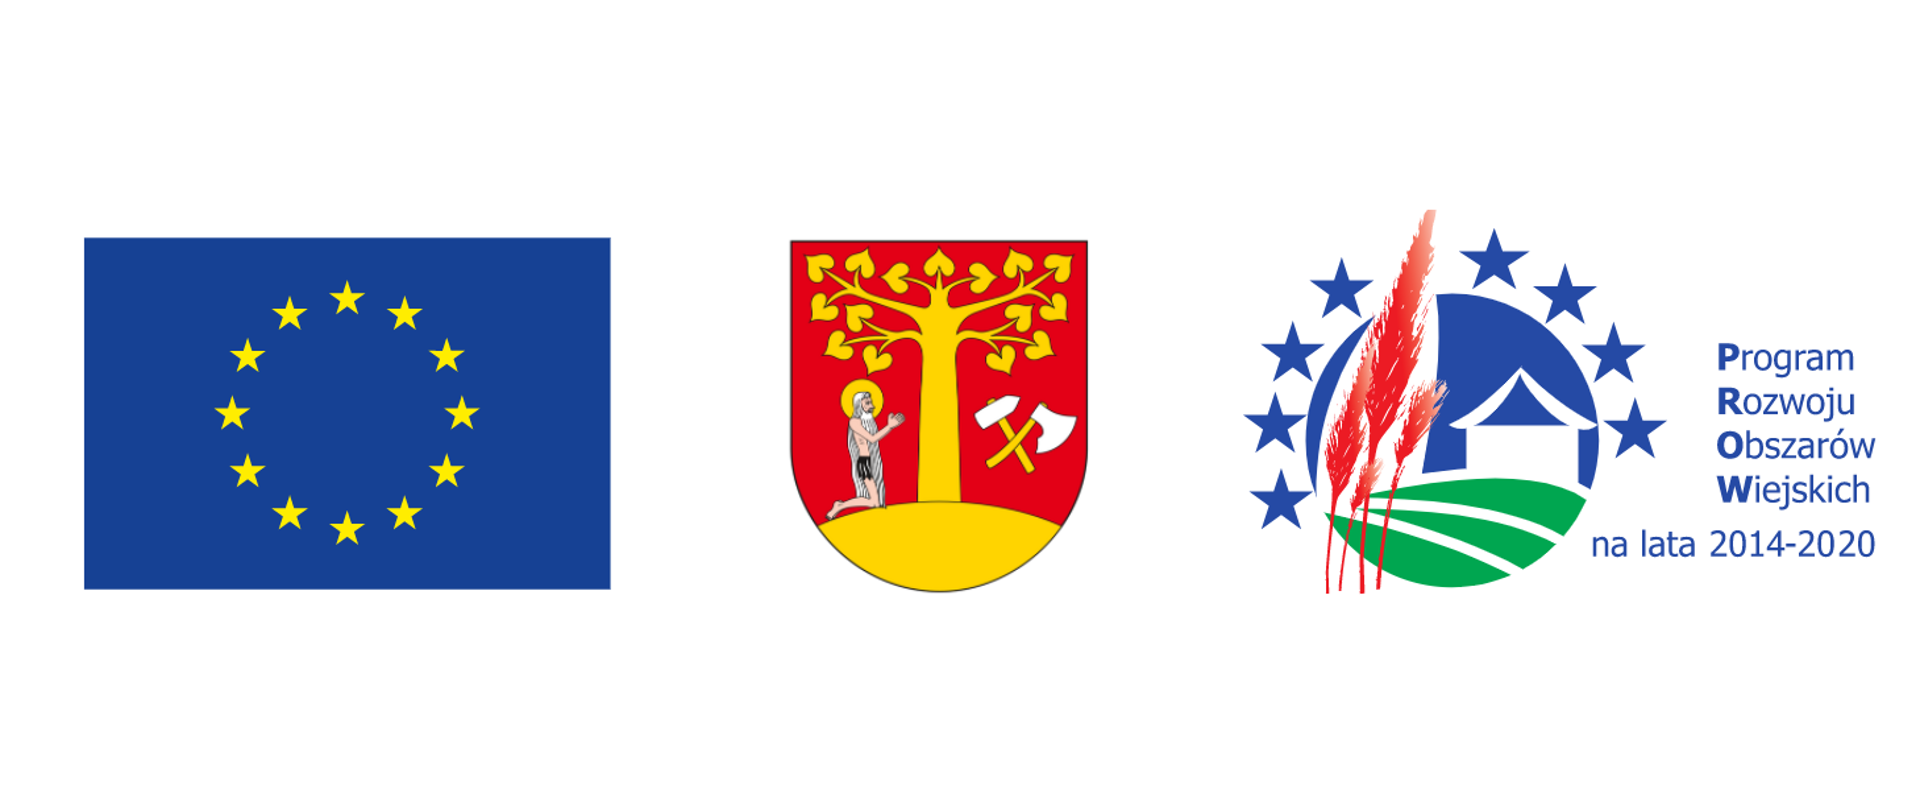  znak (symbol) Unii Europejskiej niebieski kwadrat z żółtymi gwiazdami. Herb gminy Stryszów - lipa na czerwonycm tle wraz z klęczącym człowikiem. logo PROW 2014-2020 Programu Rozwoju Obszarów Wiejskich 2014-2-2020